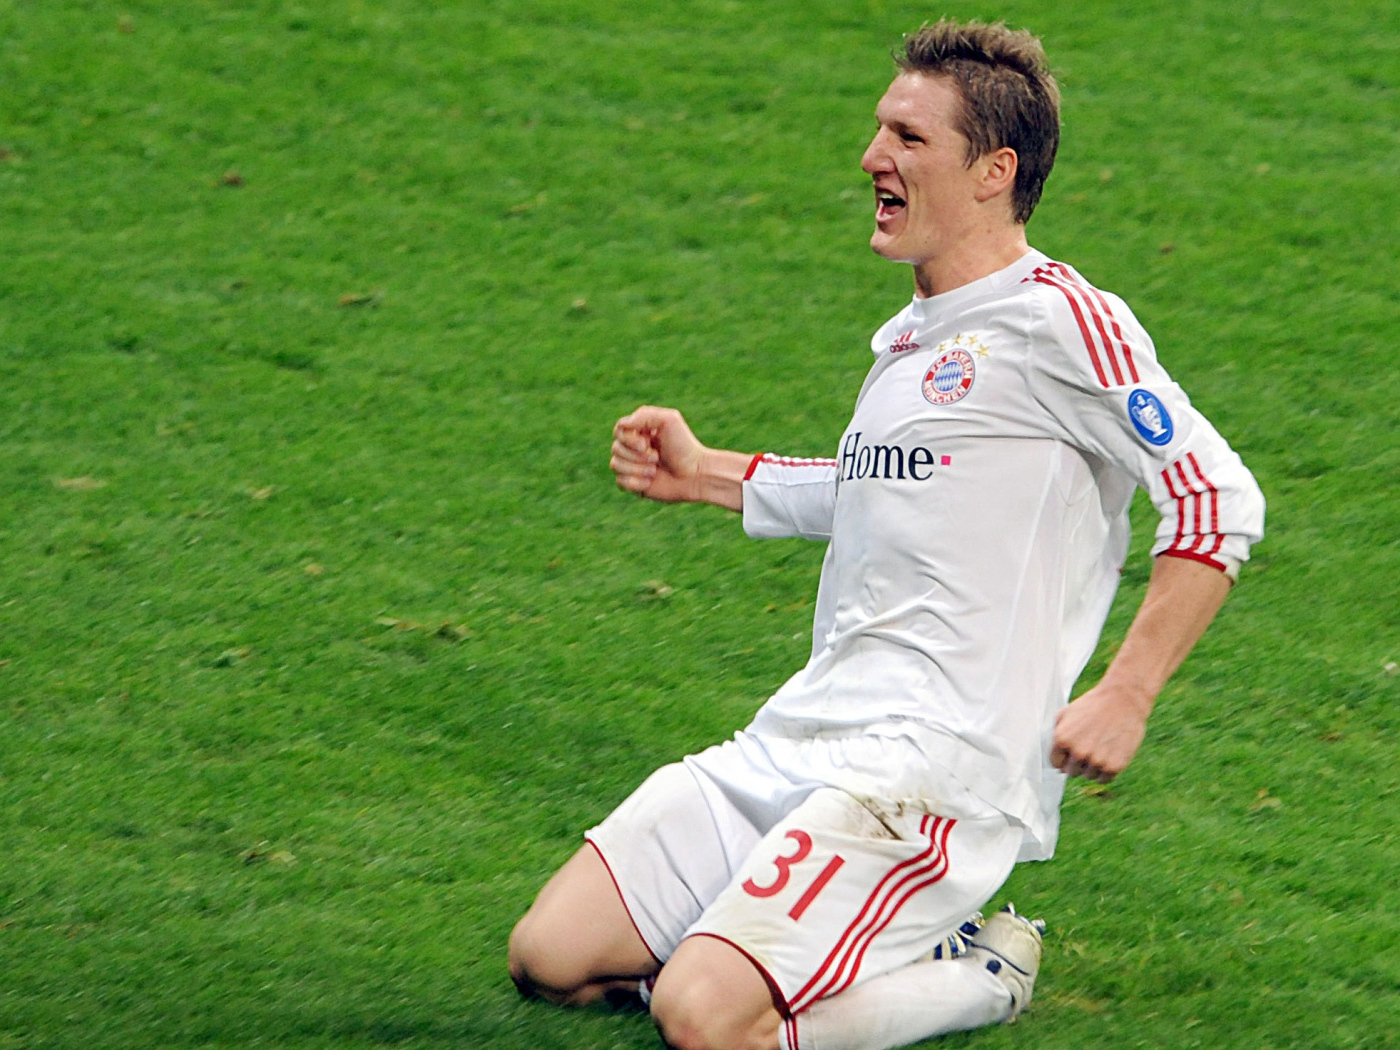 The best halfback of Bayern Bastian Schweinsteiger scored